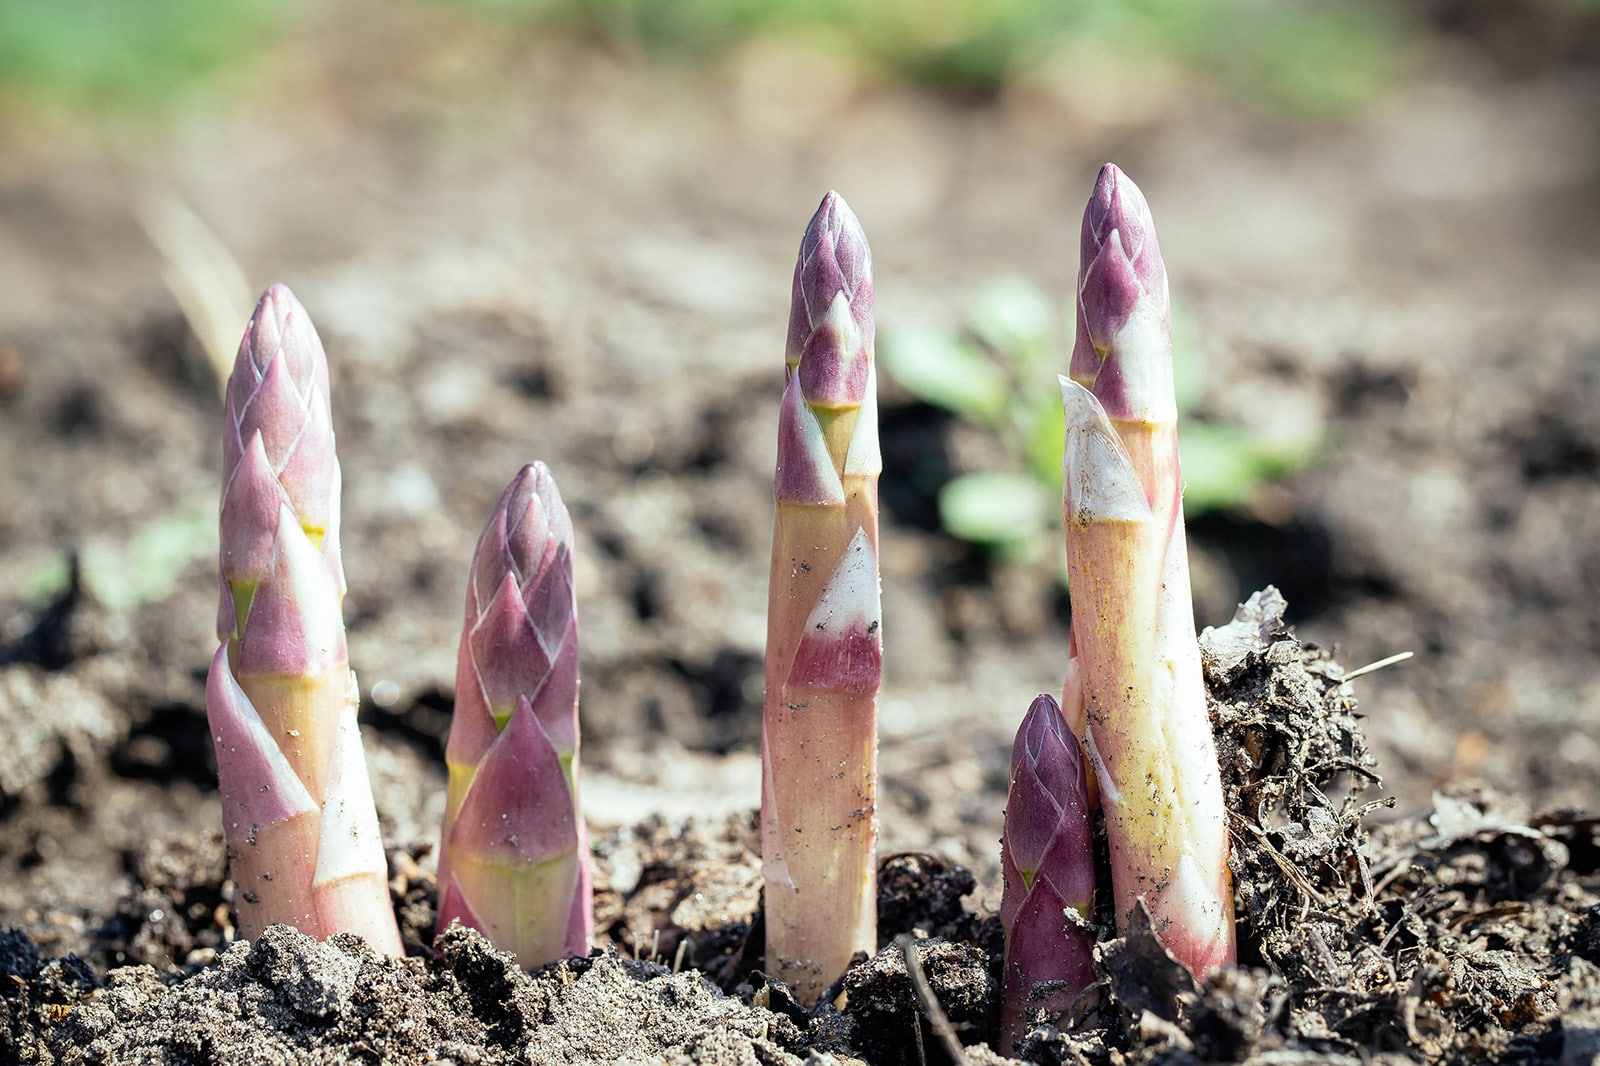 Purple asparagus spears growing in soil